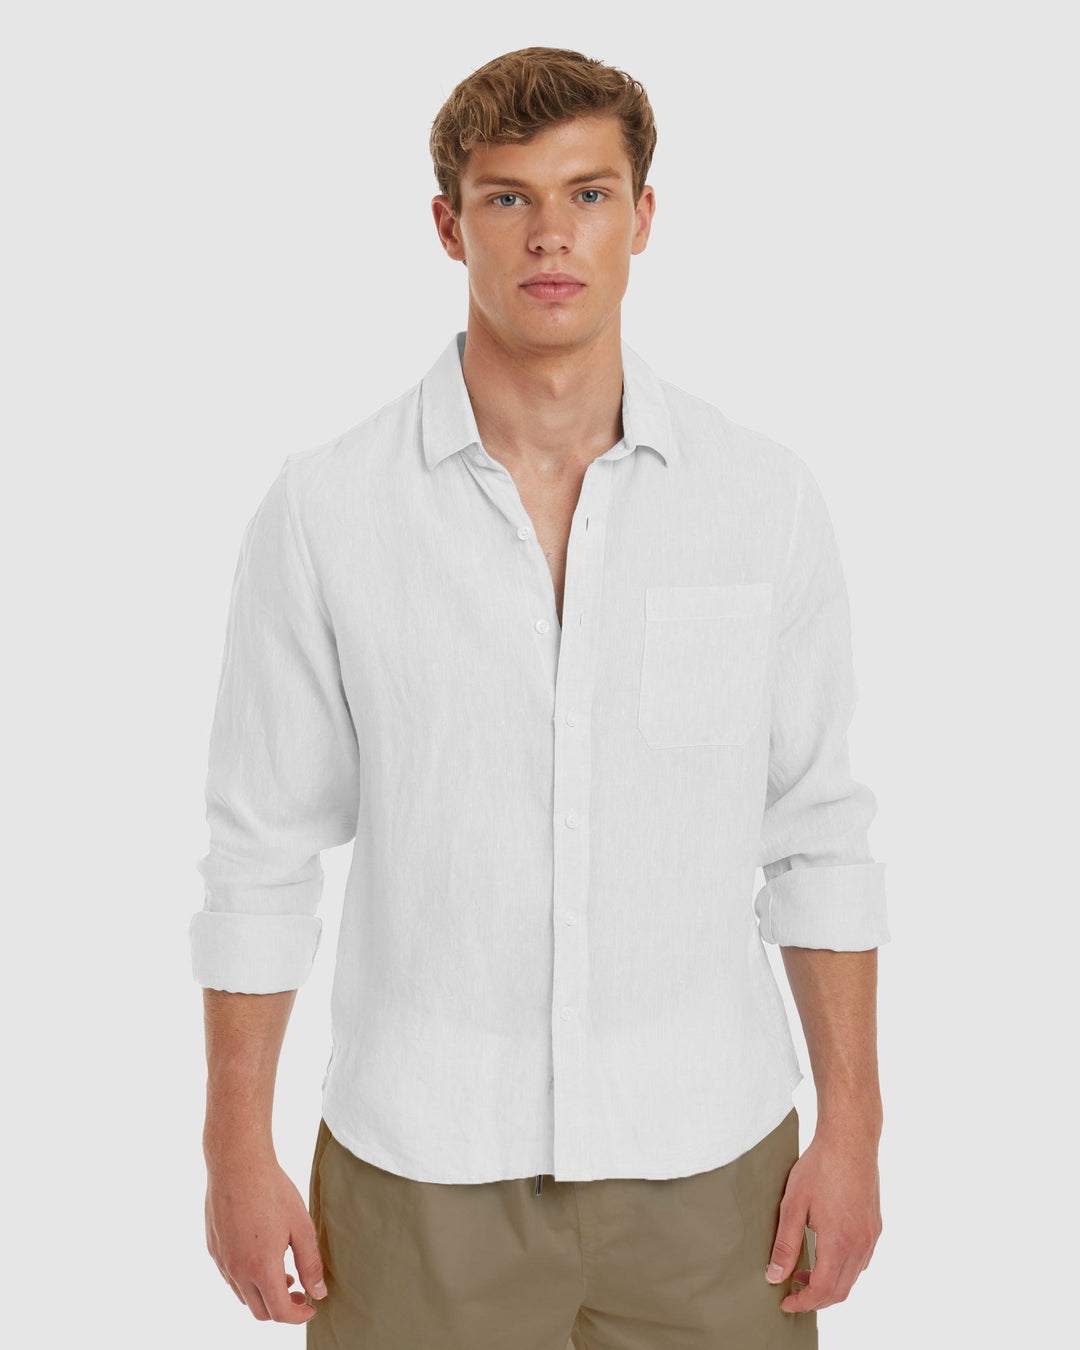 Ravello No Tuck White Linen Shirt - Slim Fit